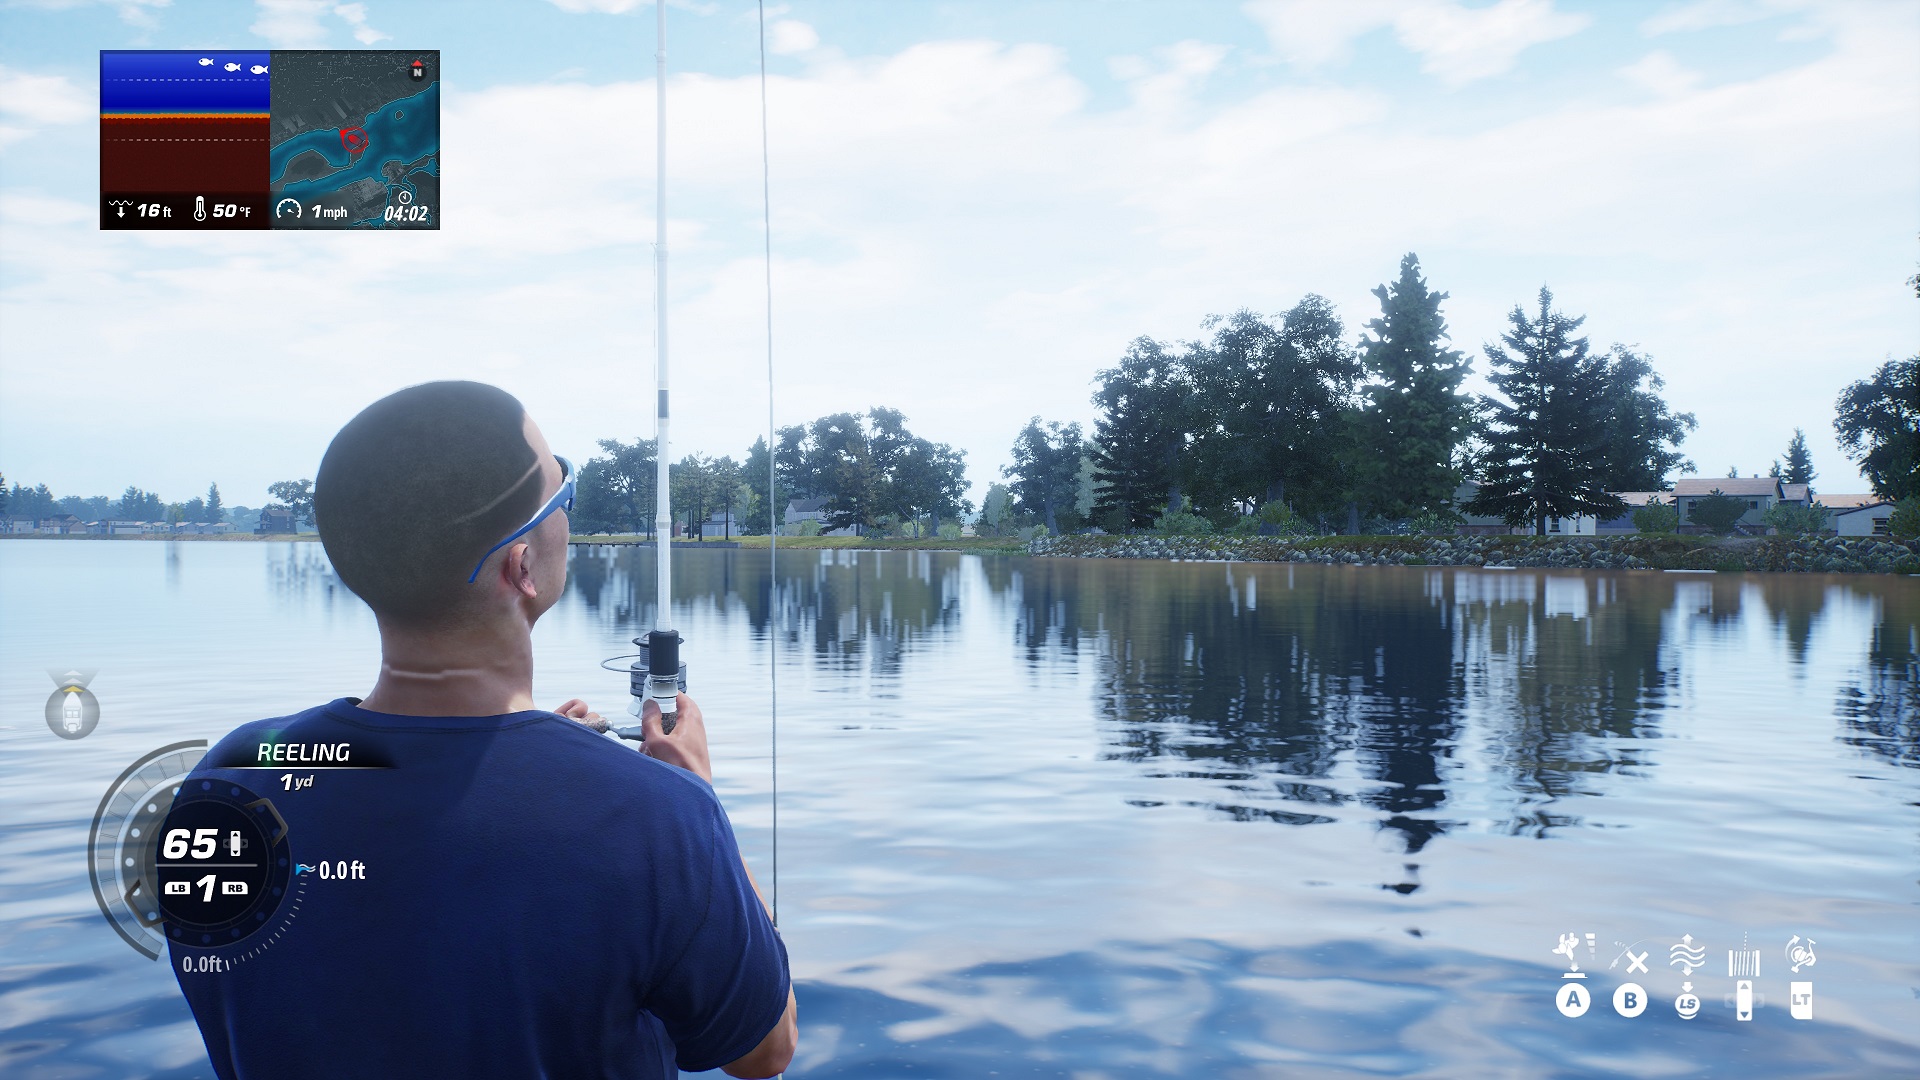 Bassmaster Fishing 2022 (2021), PS4 Game